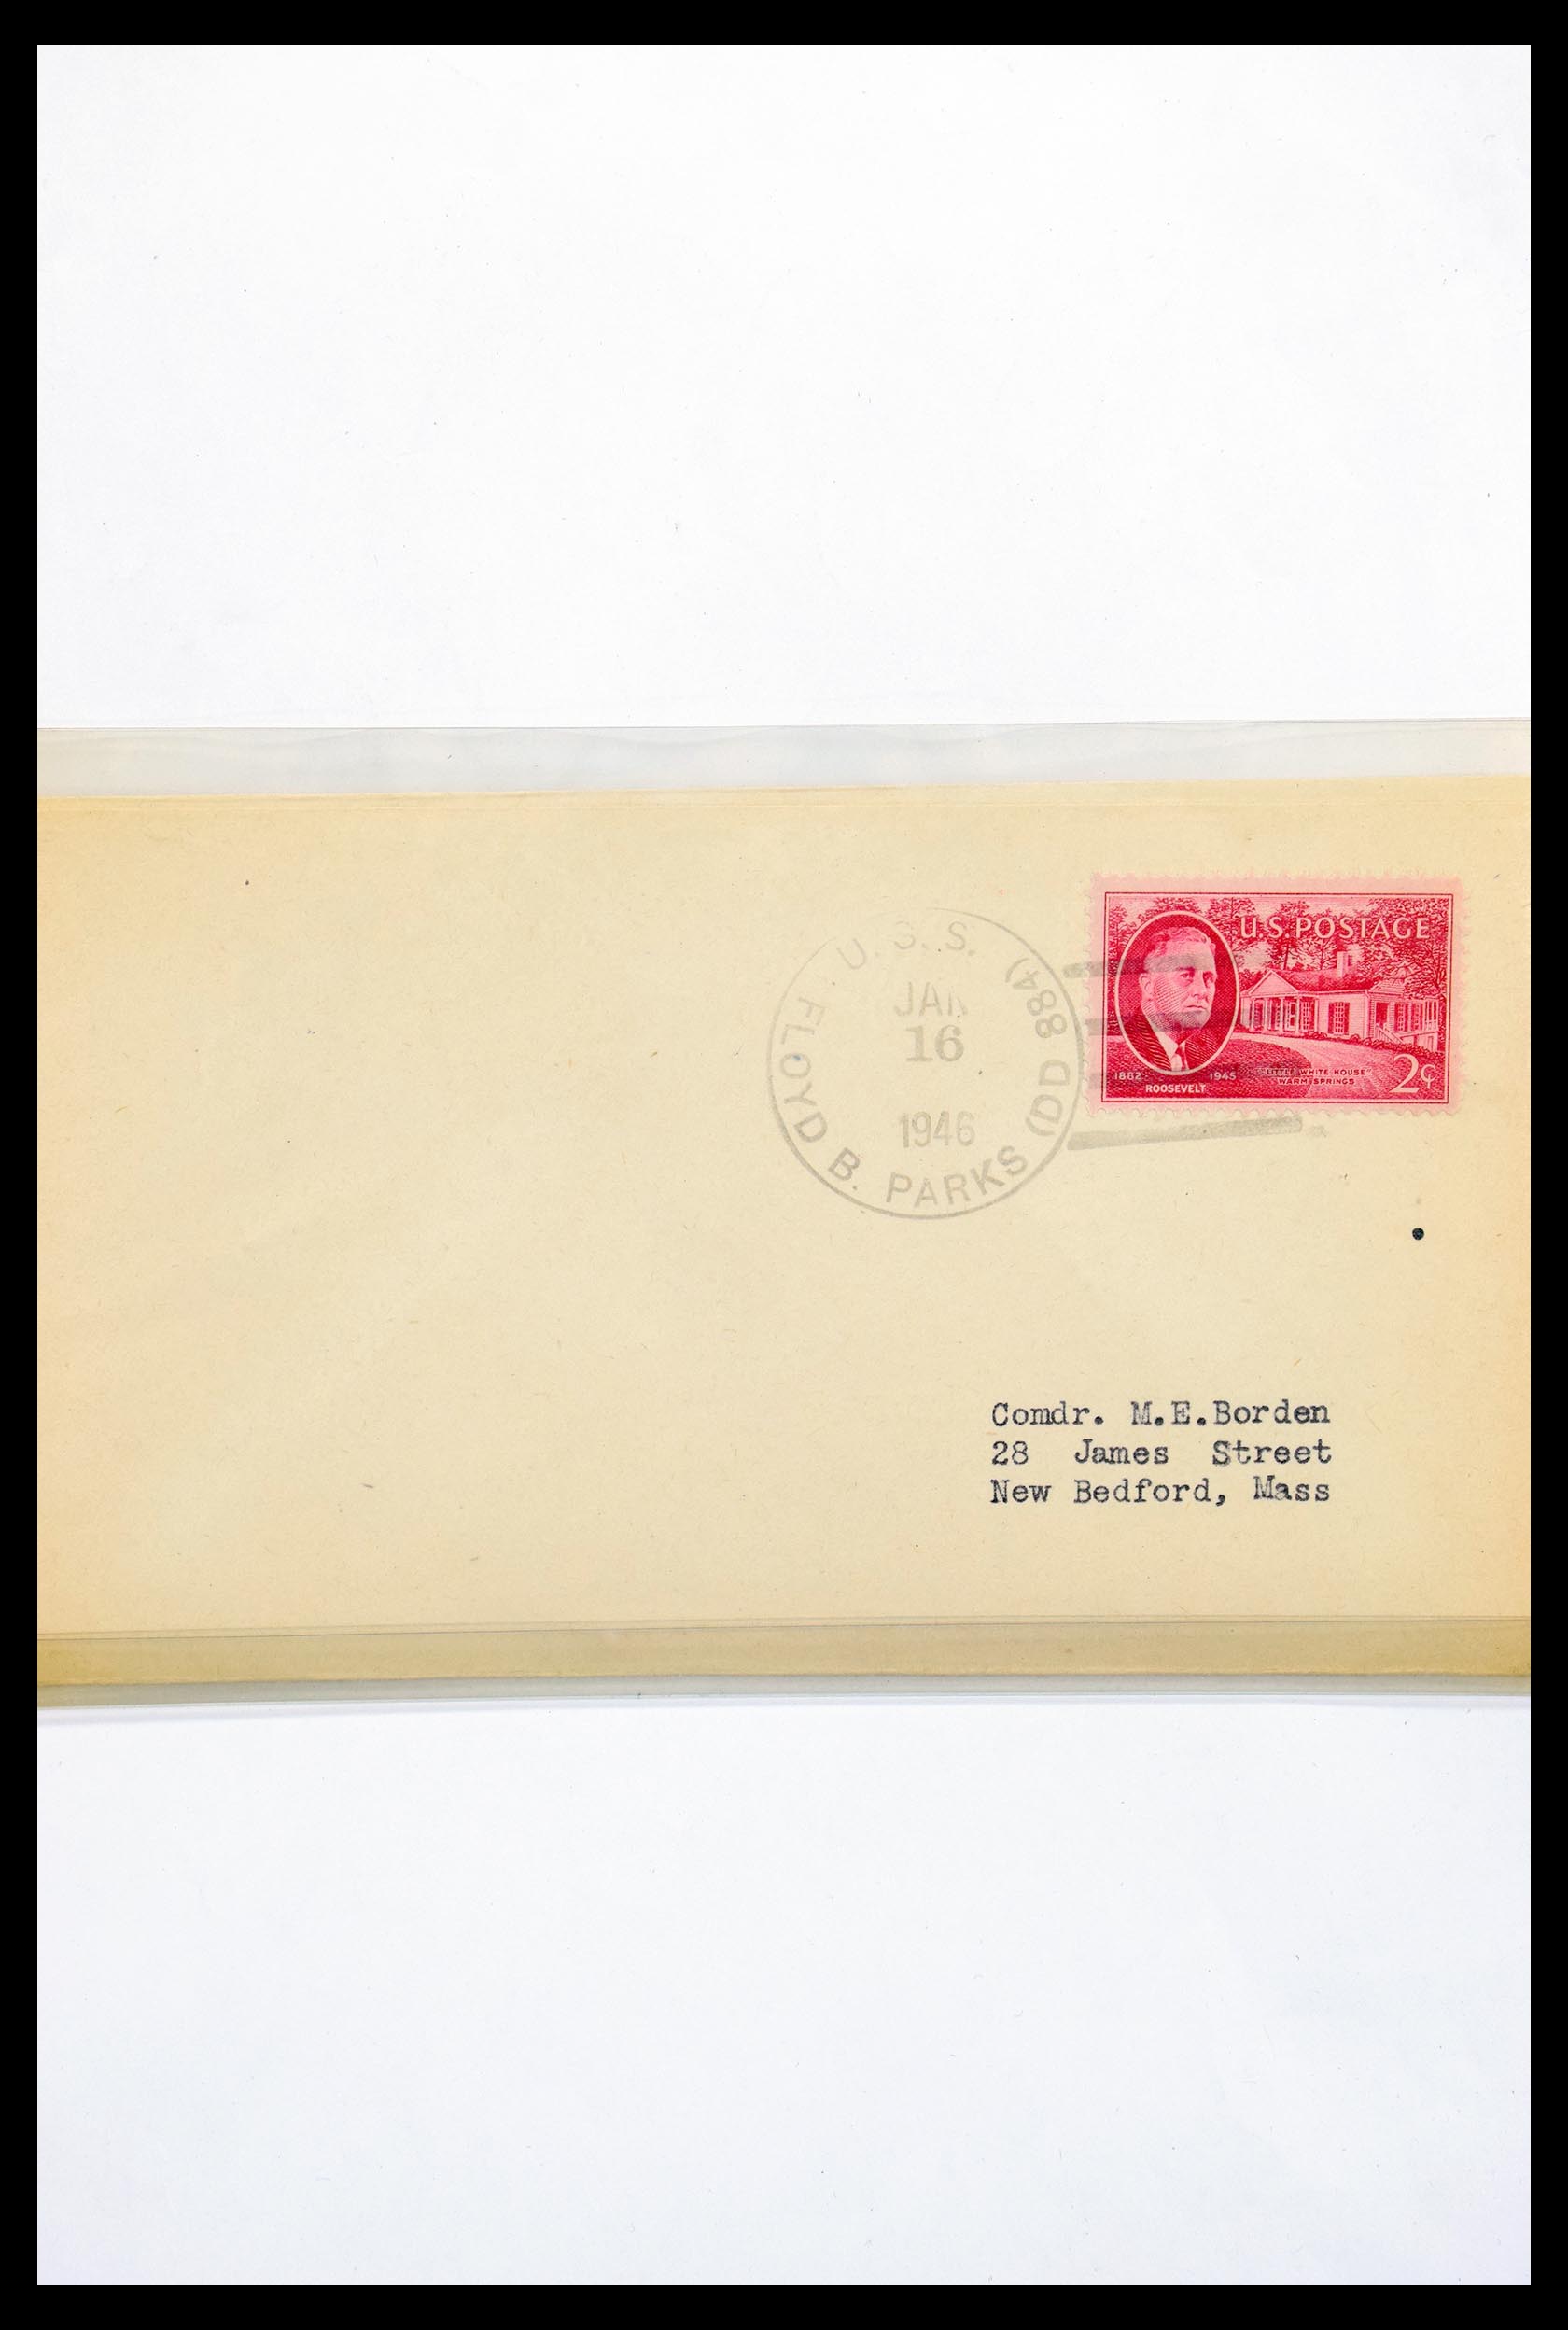 30341 313 - 30341 USA scheepspost brieven 1930-1970.